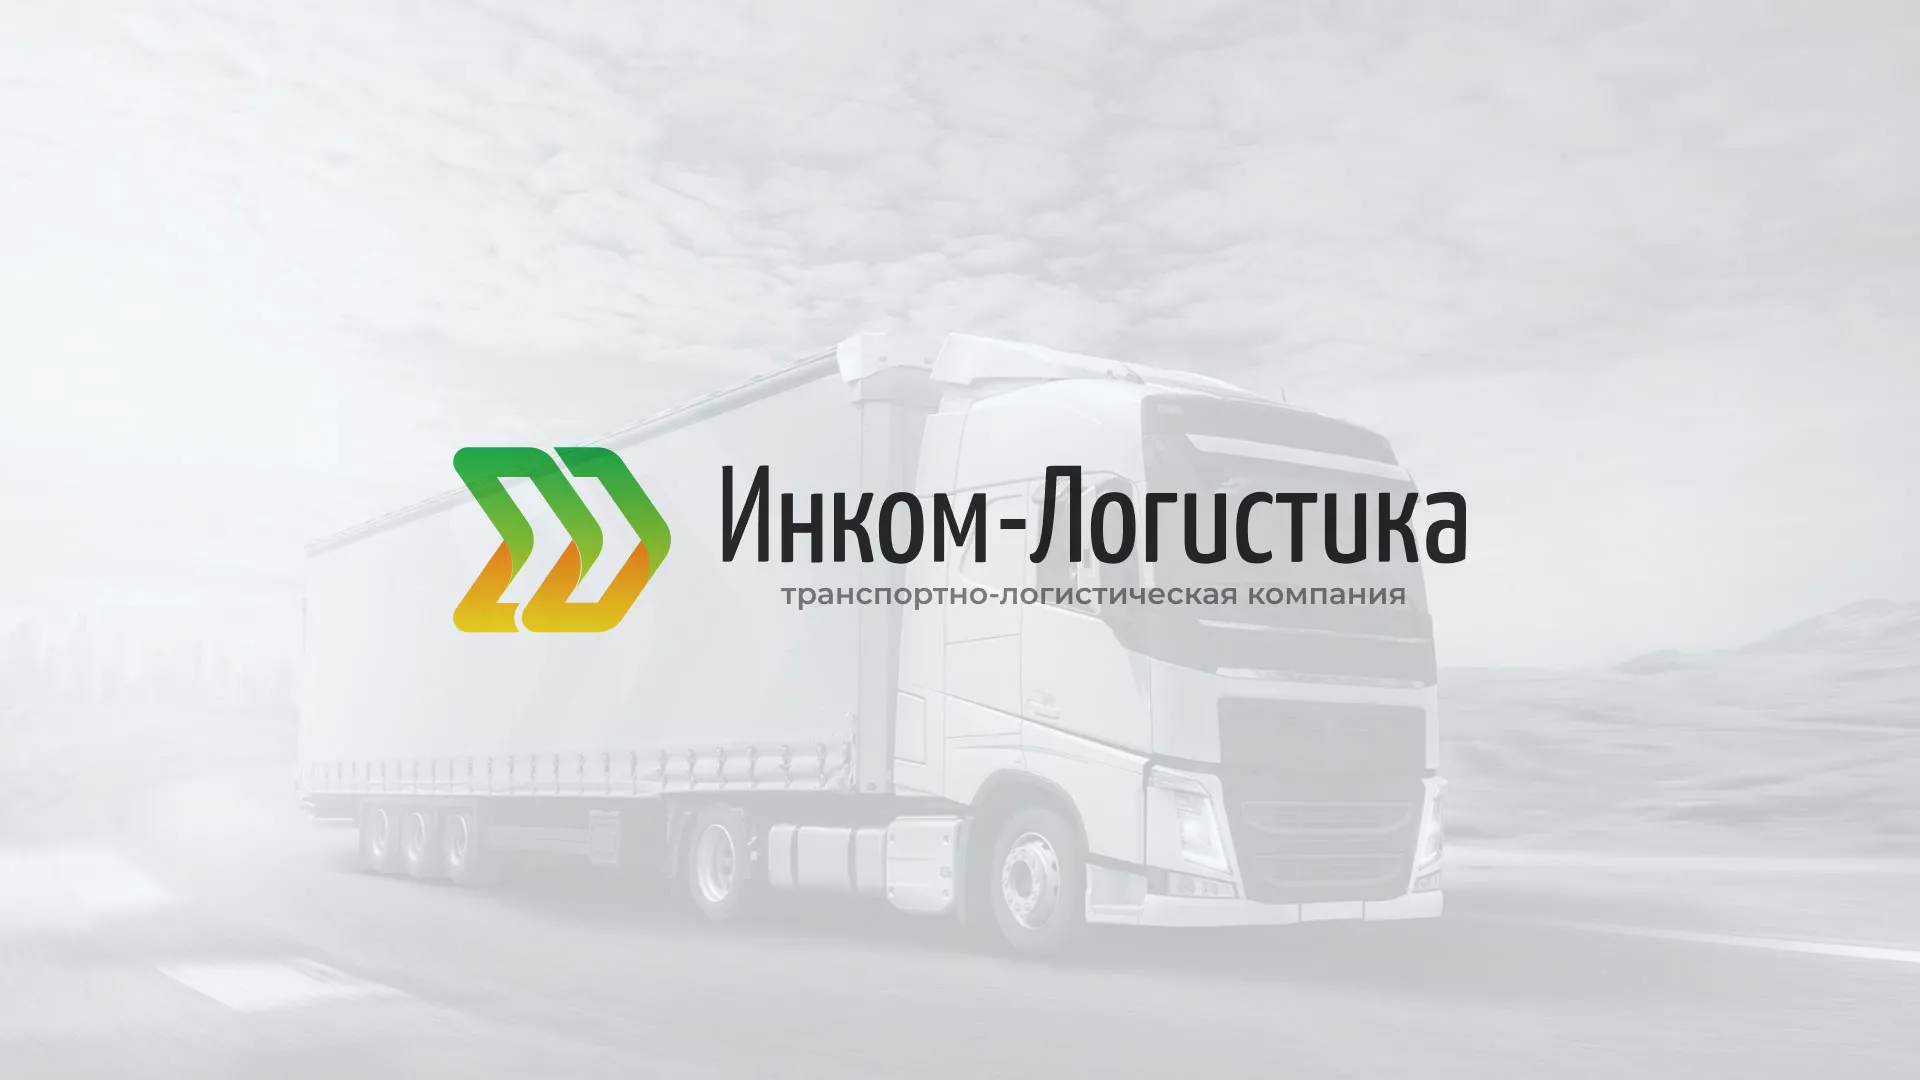 Разработка логотипа и сайта компании «Инком-Логистика» в Вёшках